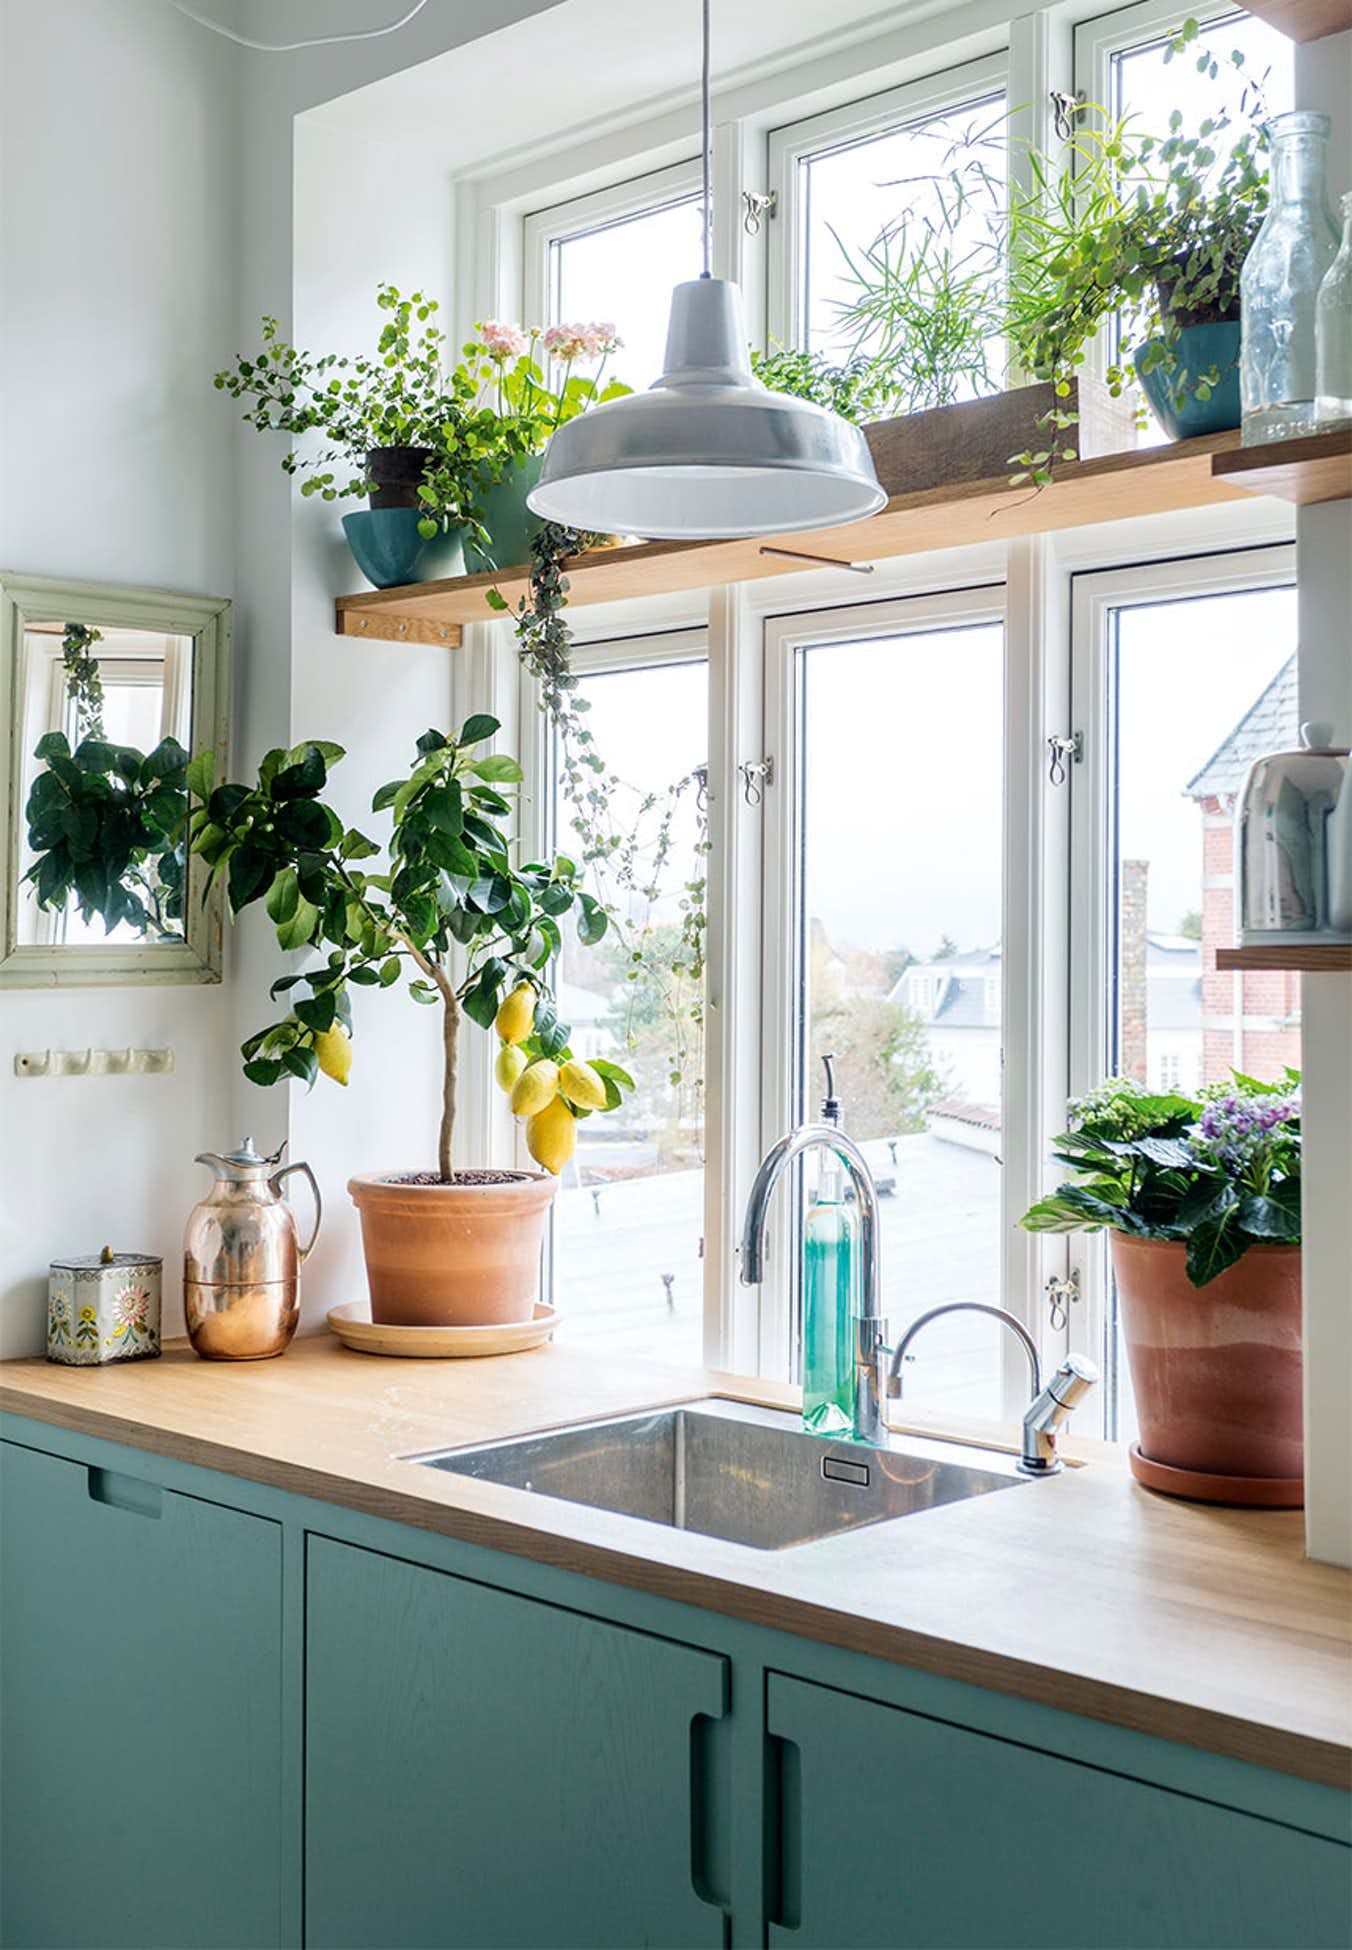 Bạn nên trồng cây xanh trong nhà bếp để giảm mùi khó chịu